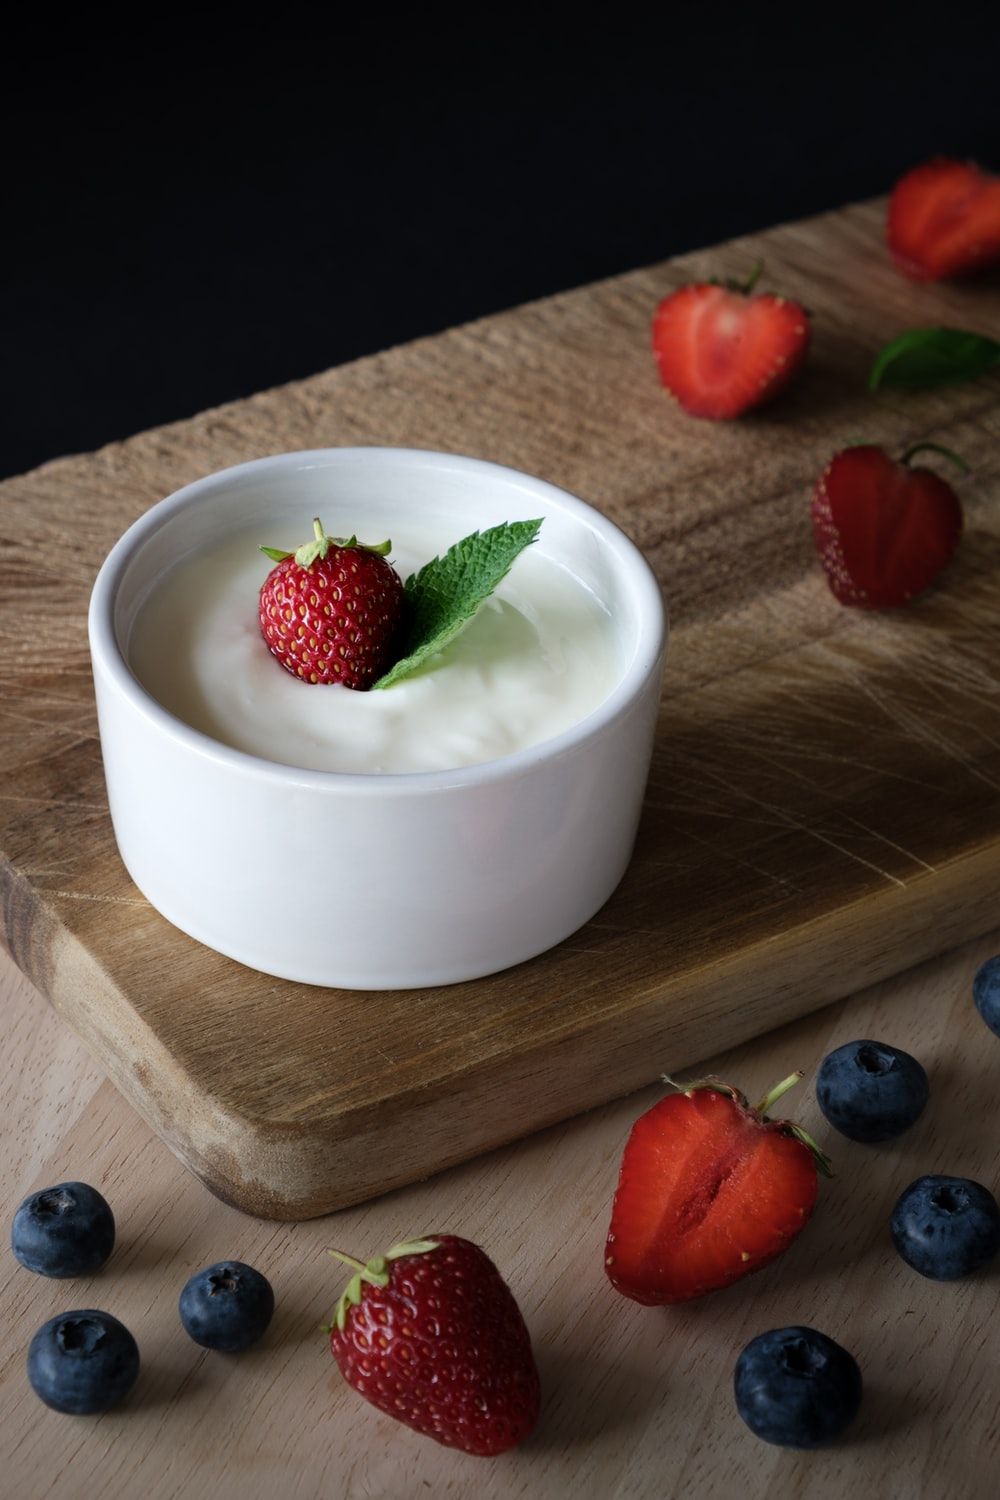 Yogurt Picture. Download Free Image